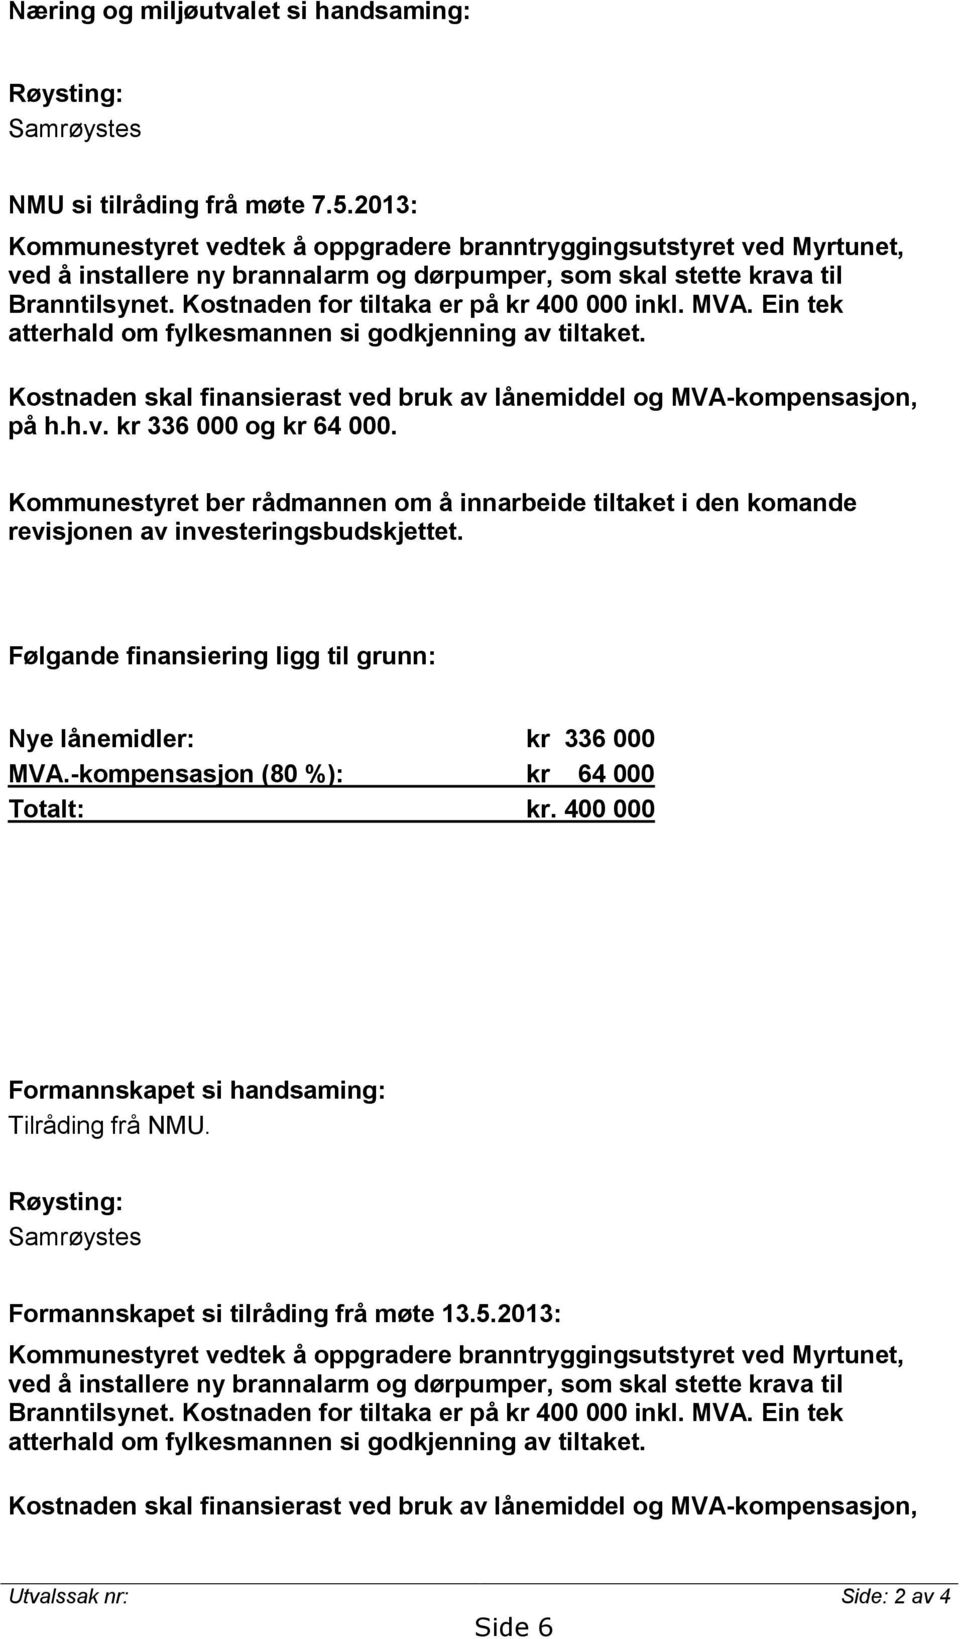 Kostnaden for tiltaka er på kr 400 000 inkl. MVA. Ein tek atterhald om fylkesmannen si godkjenning av tiltaket. Kostnaden skal finansierast ved bruk av lånemiddel og MVA-kompensasjon, på h.h.v. kr 336 000 og kr 64 000.